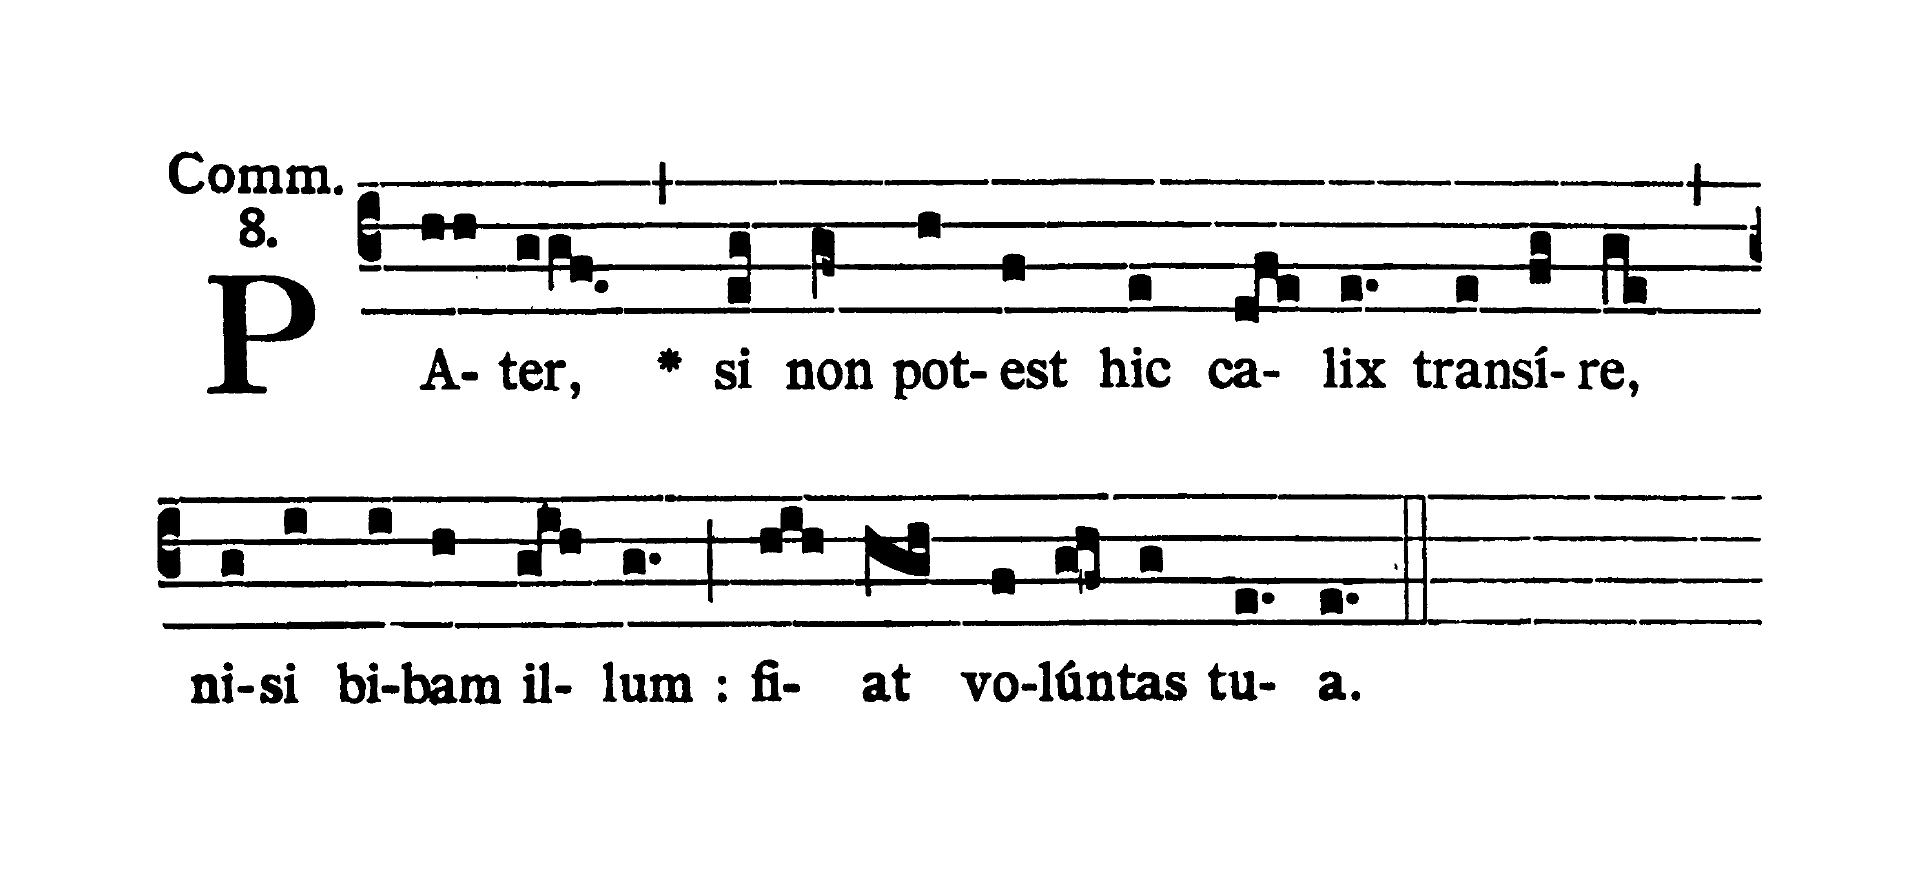 Dominica II in Passionis seu in Palmis - Communio (Pater si non potest)